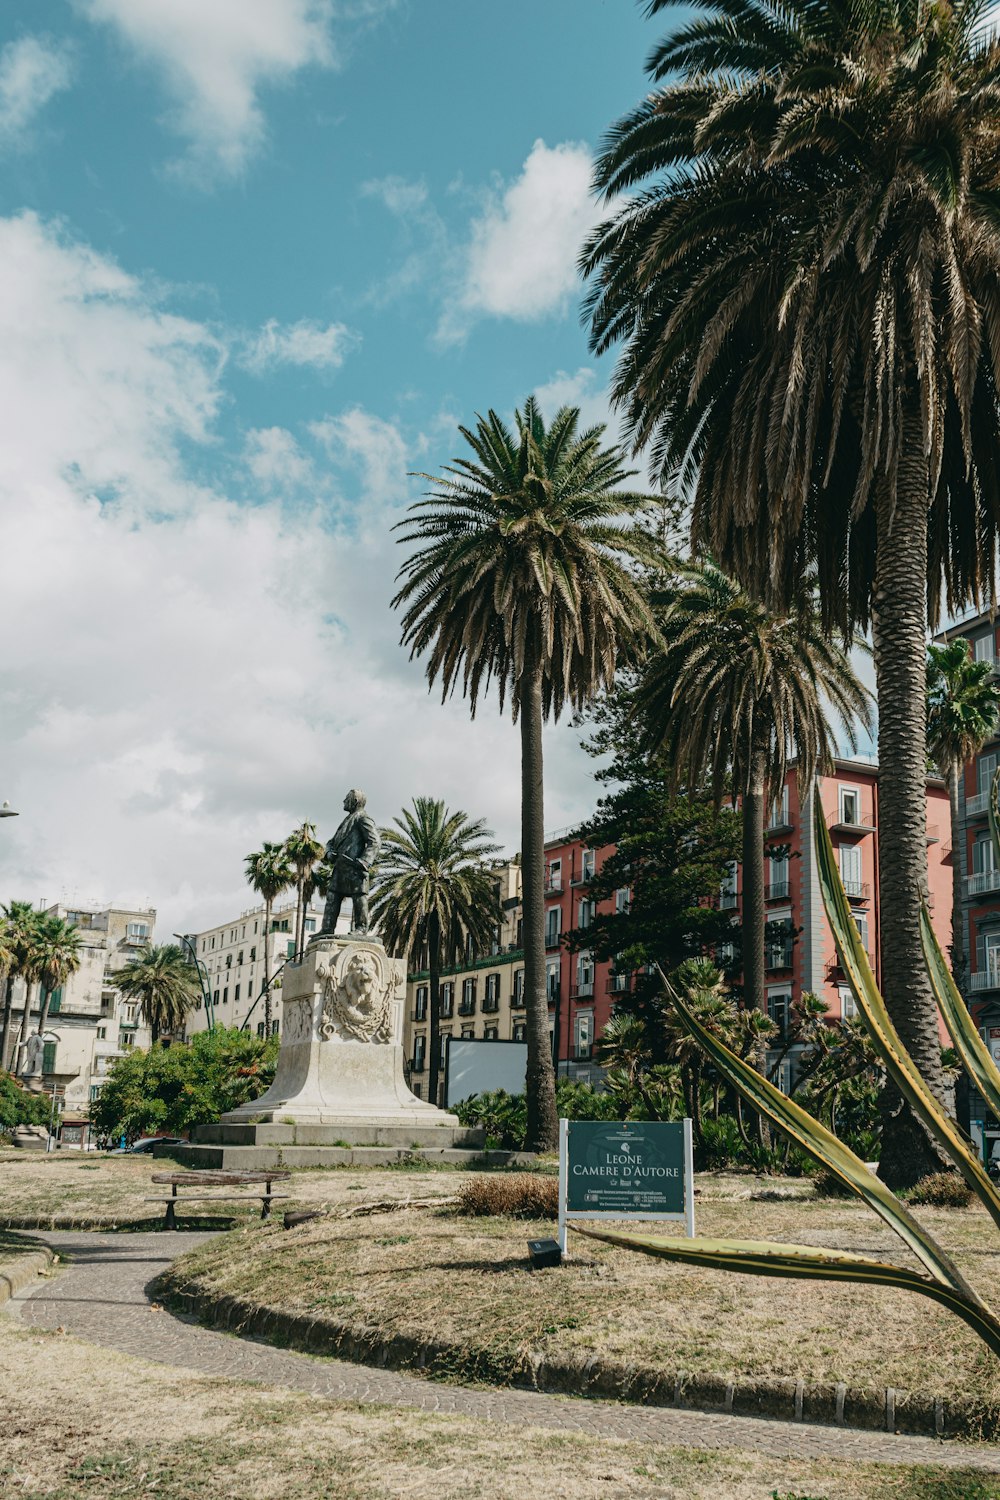 Eine Statue eines Mannes, umgeben von Palmen